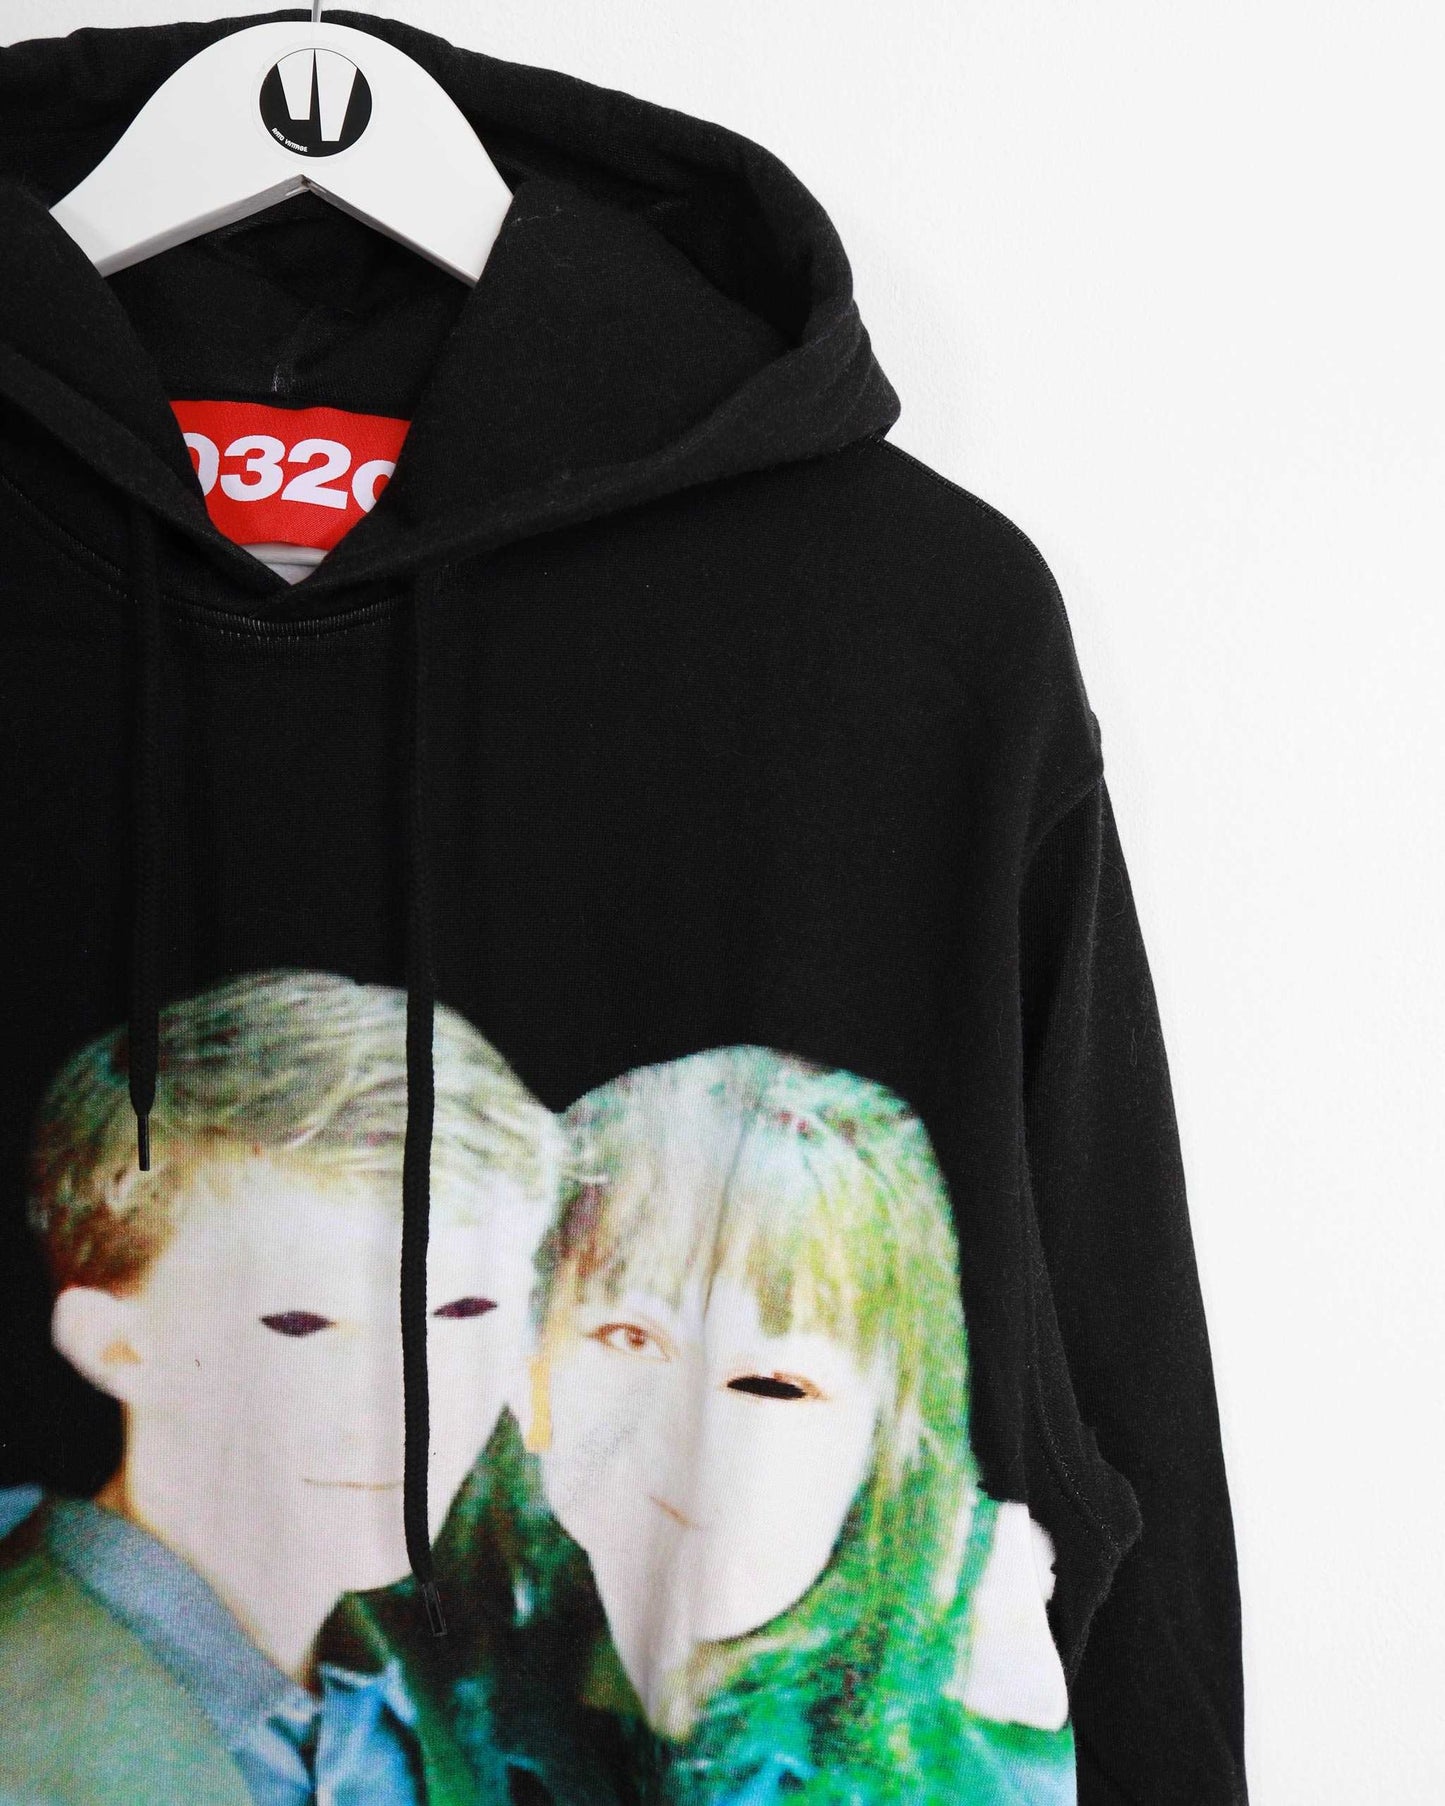 032c pullover hoodie